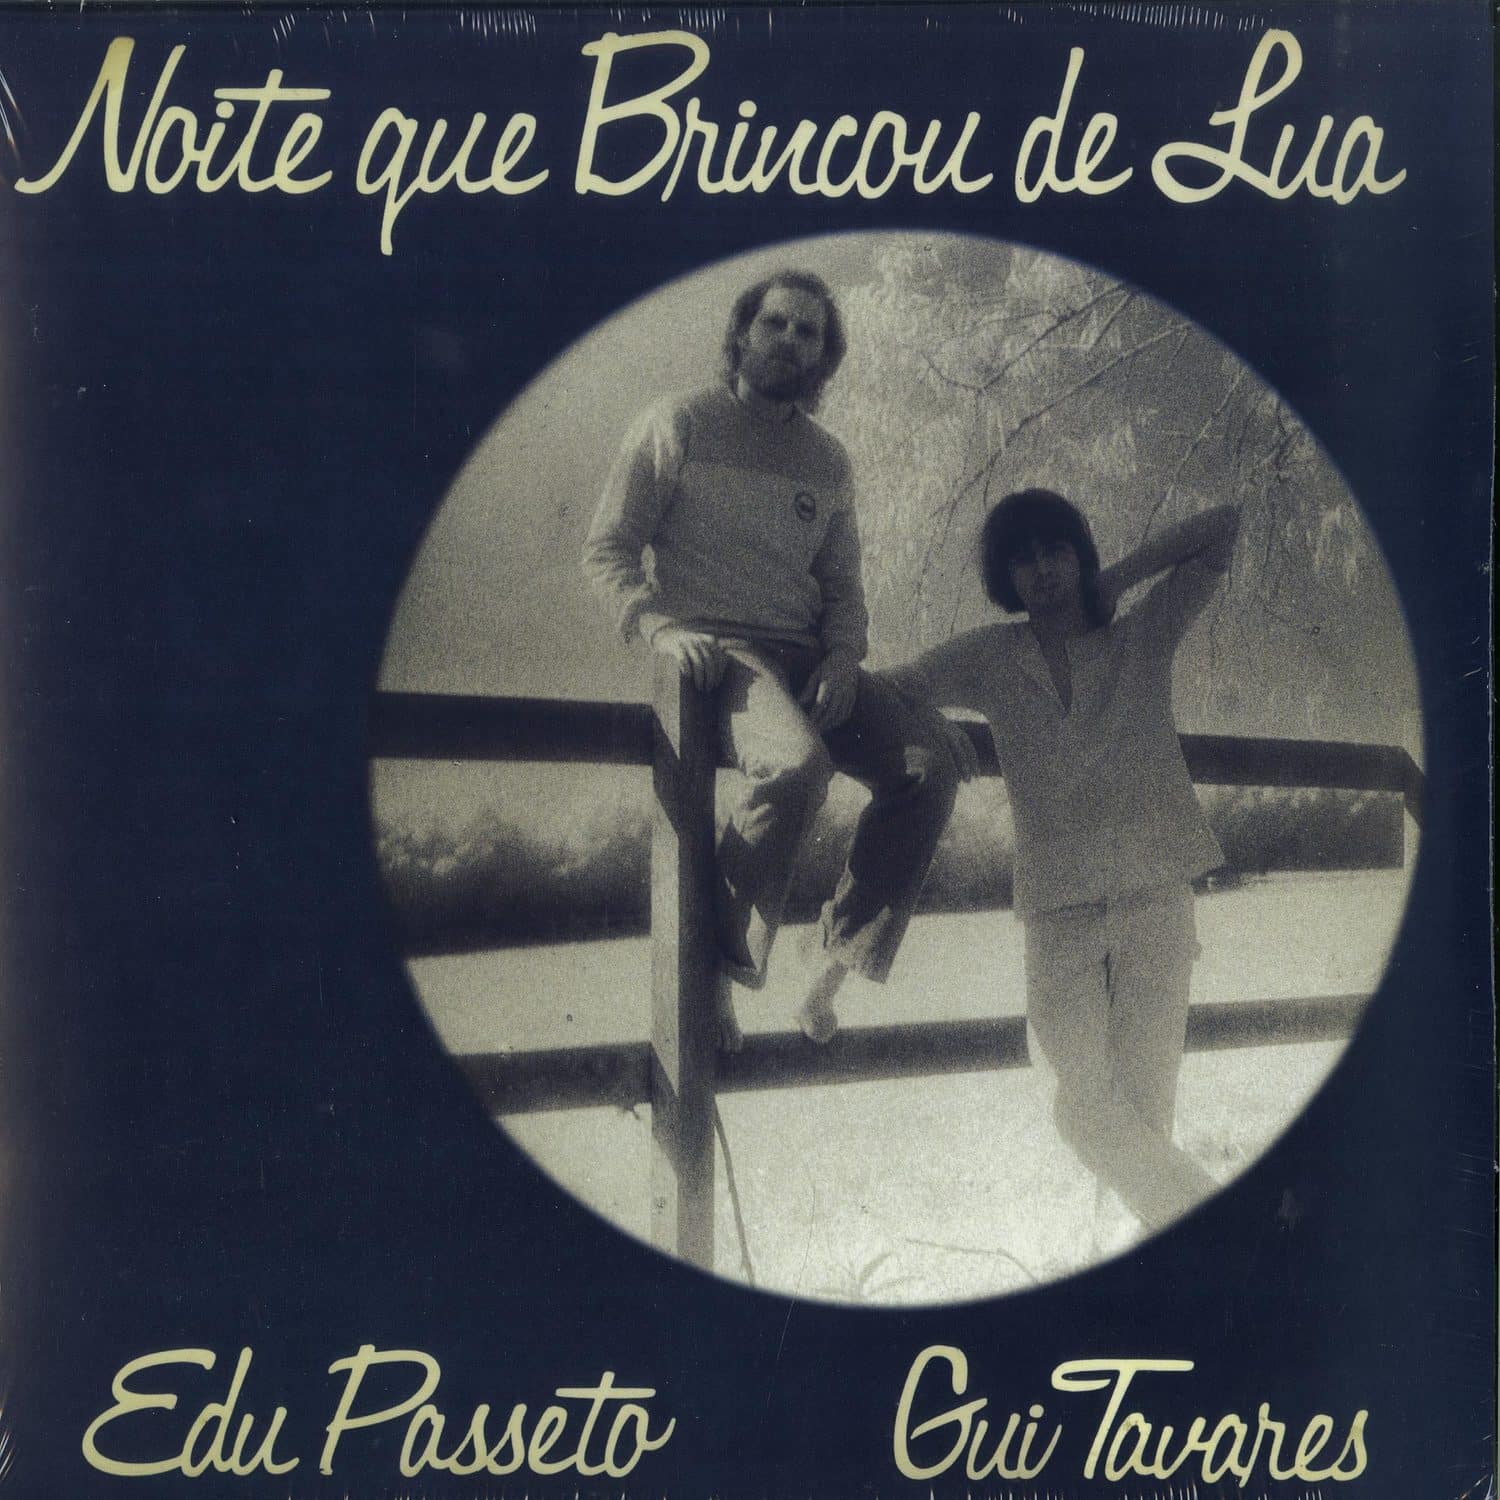 Edu Passeto & Gui Tavares - NOITE QUE BRINCOU DE LUA 